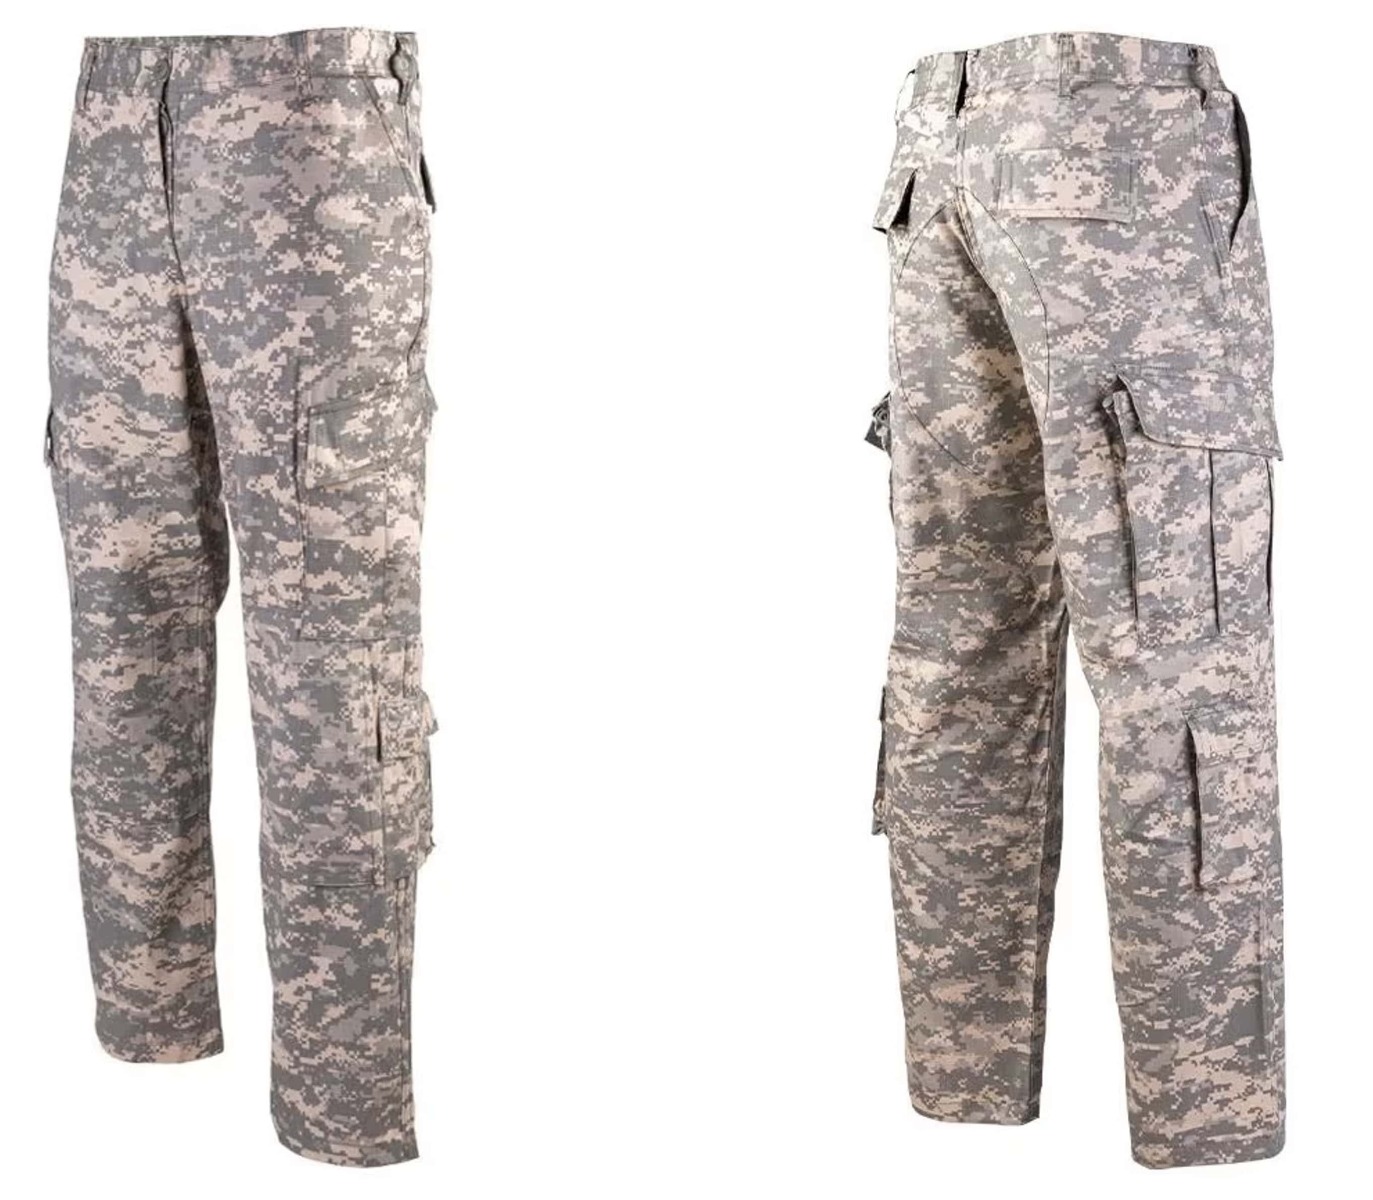 Pridobite svoj par US vojaških hlač ACU AT DIGITAL - vrhunske taktične hlače za udobje, vzdržljivost in funkcionalnost. Primerno za vojaške operacije, pohodništvo, lov in varnostne sile. Opremite se s kakovostnim vojaškim oblačilom!